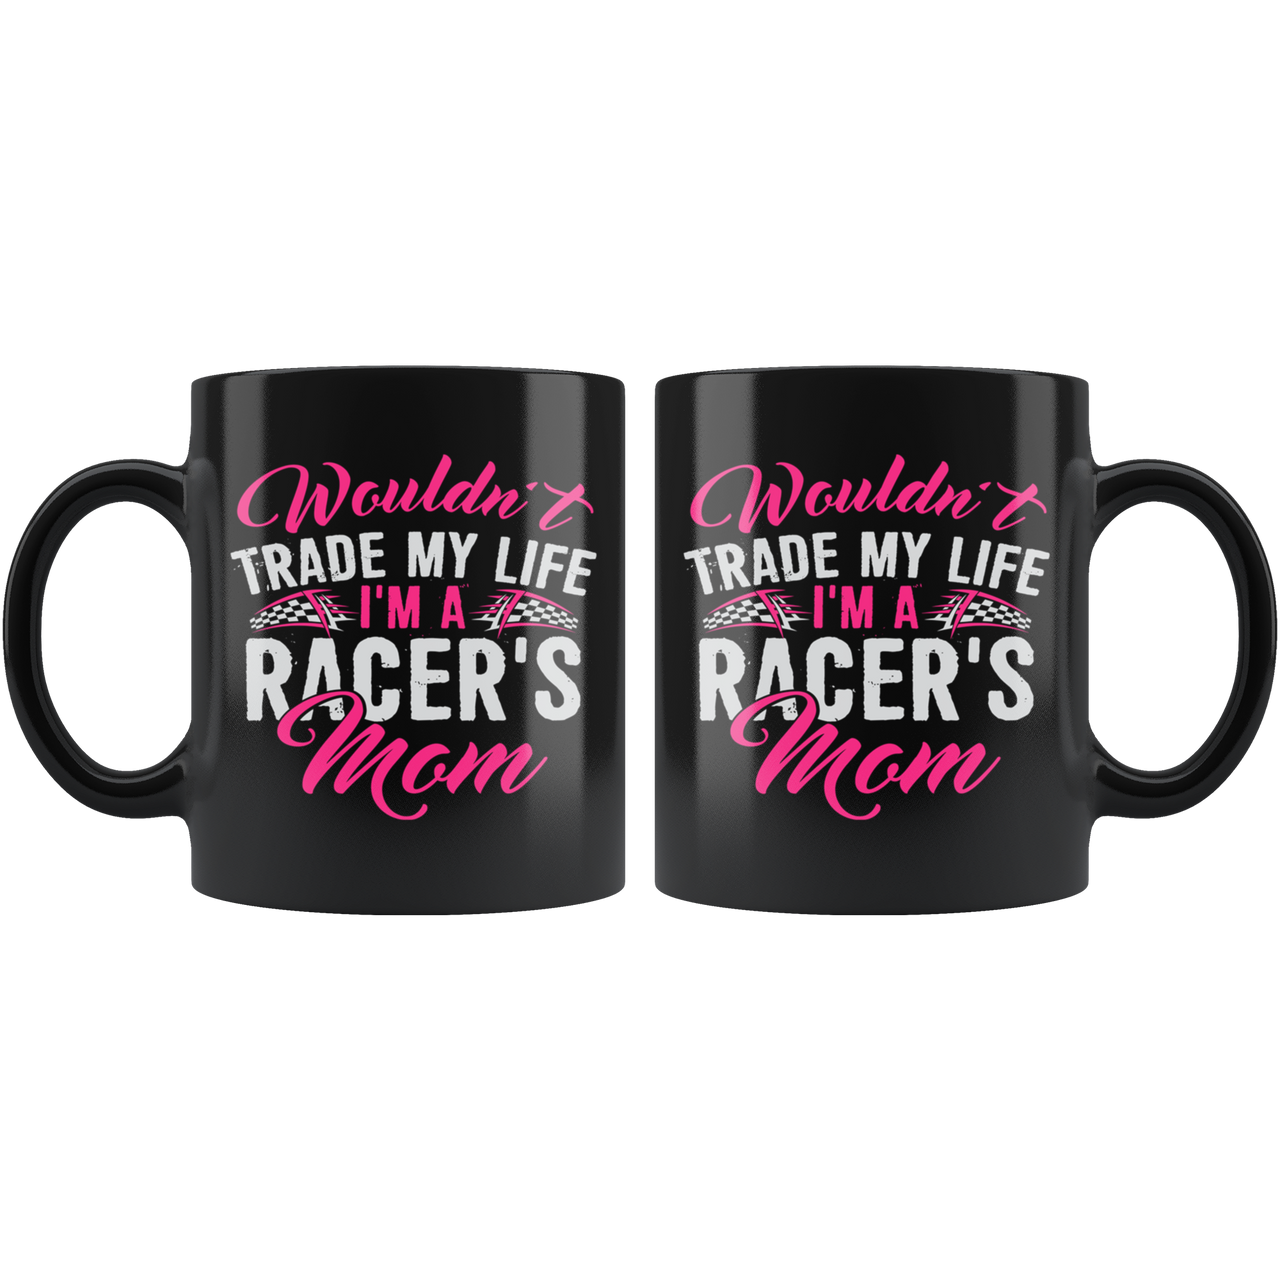 Wouldn't Trade My Life I'm A Racer's Mom PV Mug!